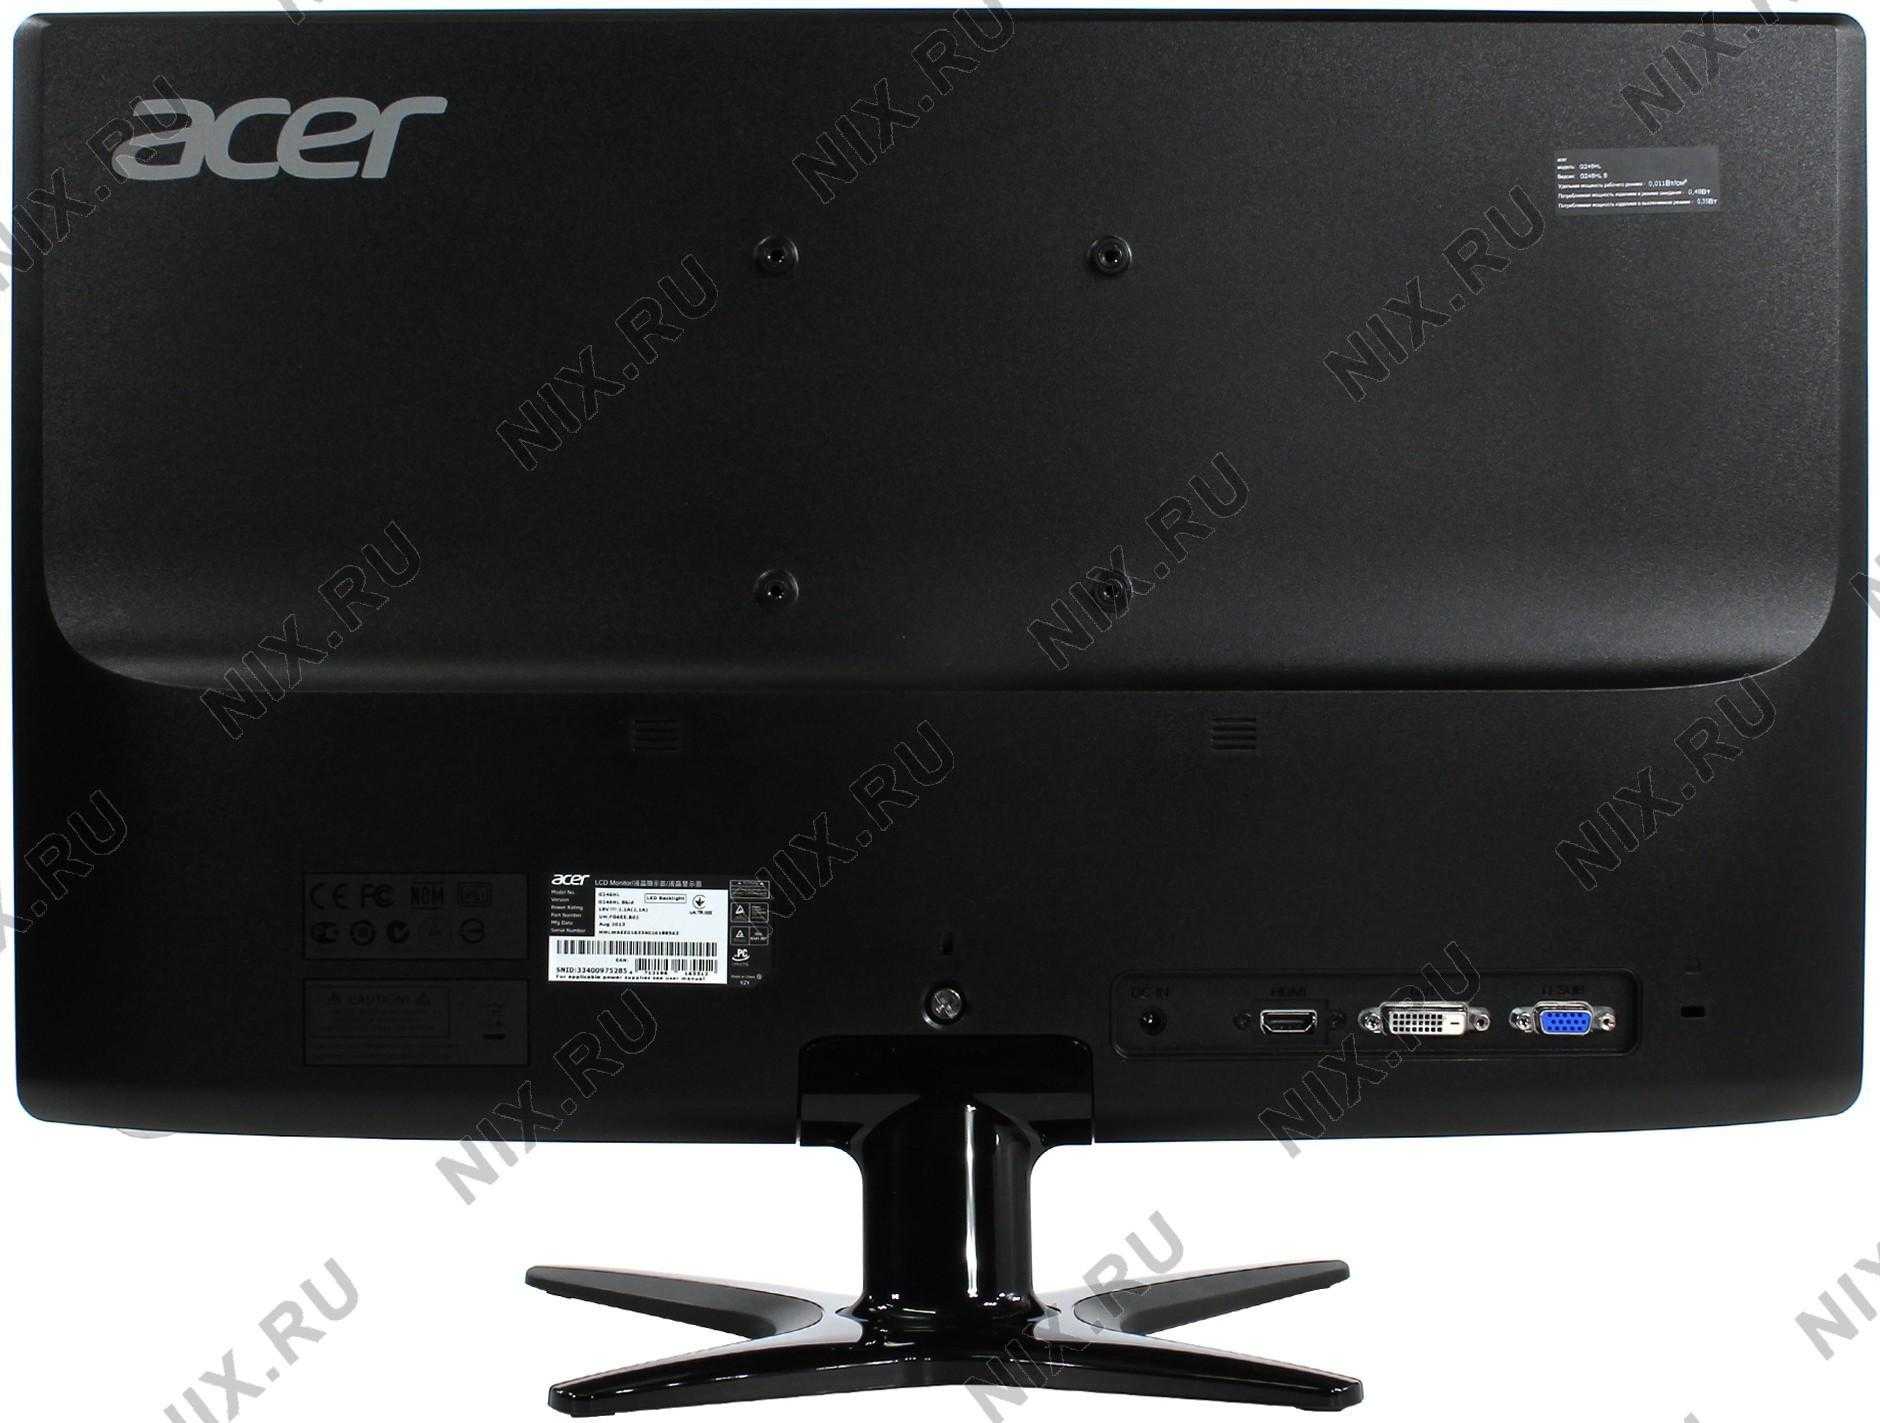 Жк монитор 24" acer g246hl bbid — купить, цена и характеристики, отзывы